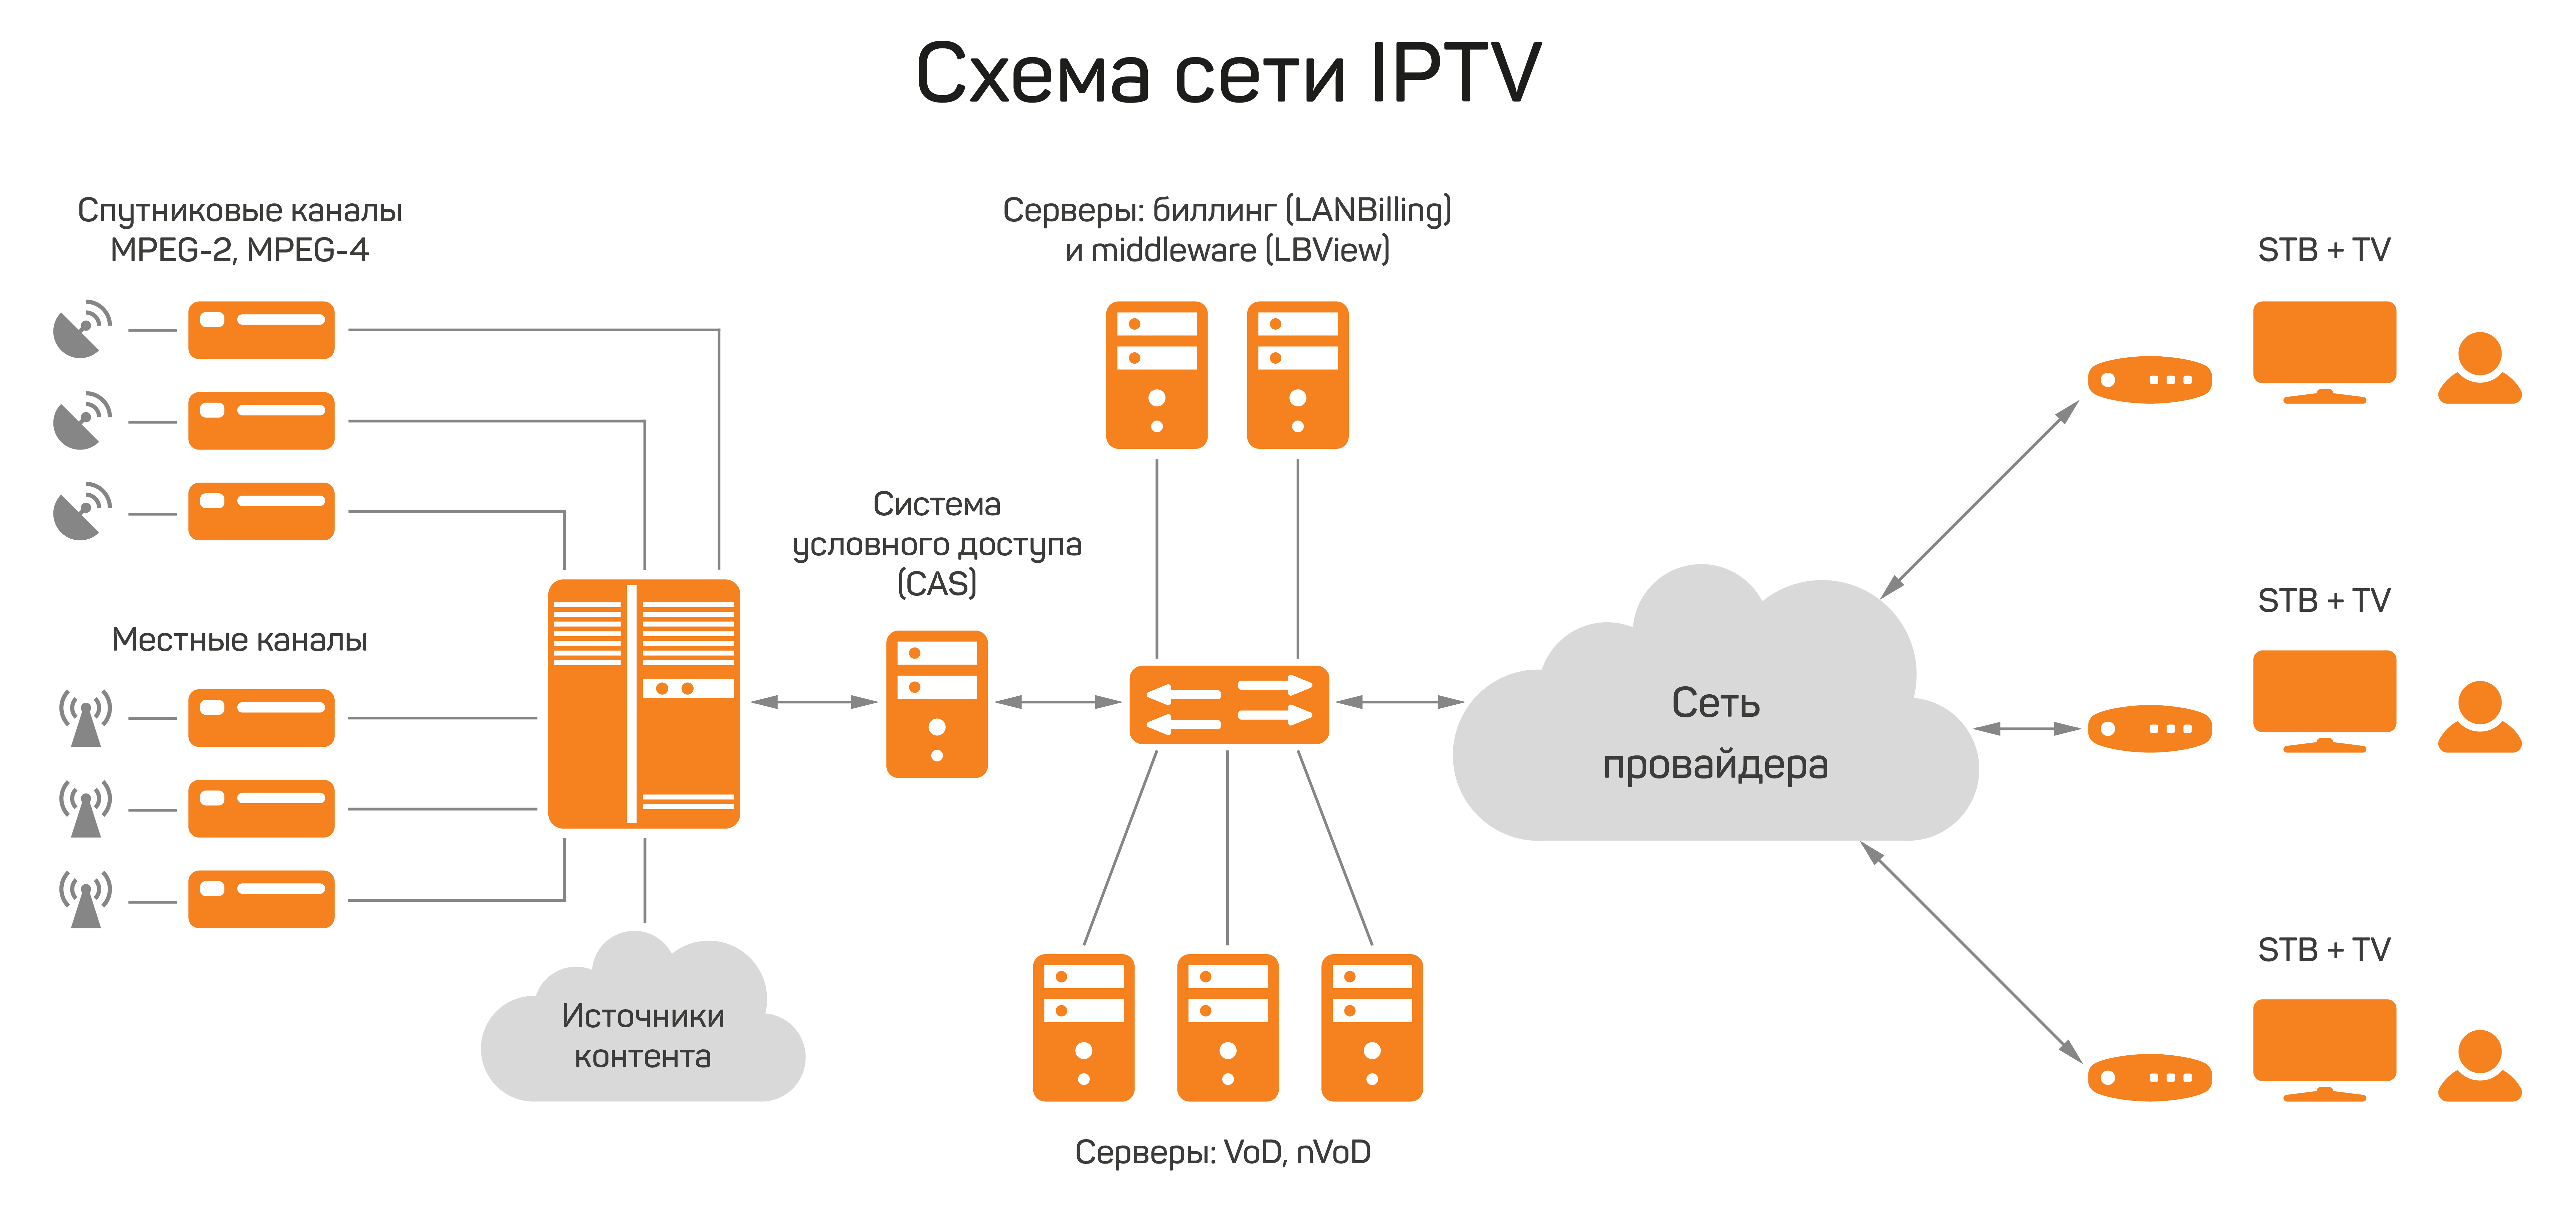 Схема сети IPTV для LANBilling View